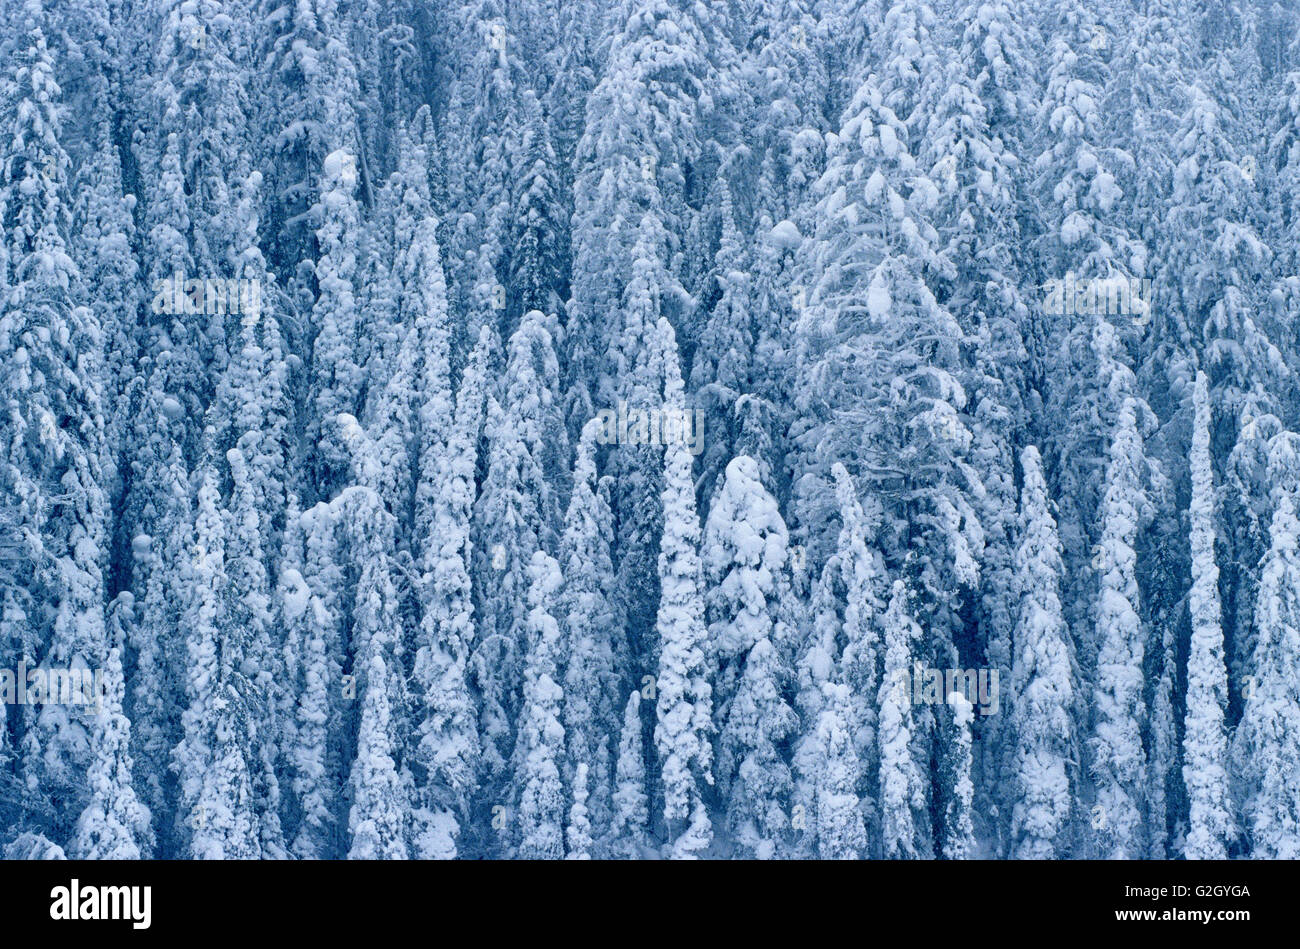 Heavy snowfall on coniferous trees Kootenay National Park British Columbia Canada Stock Photo